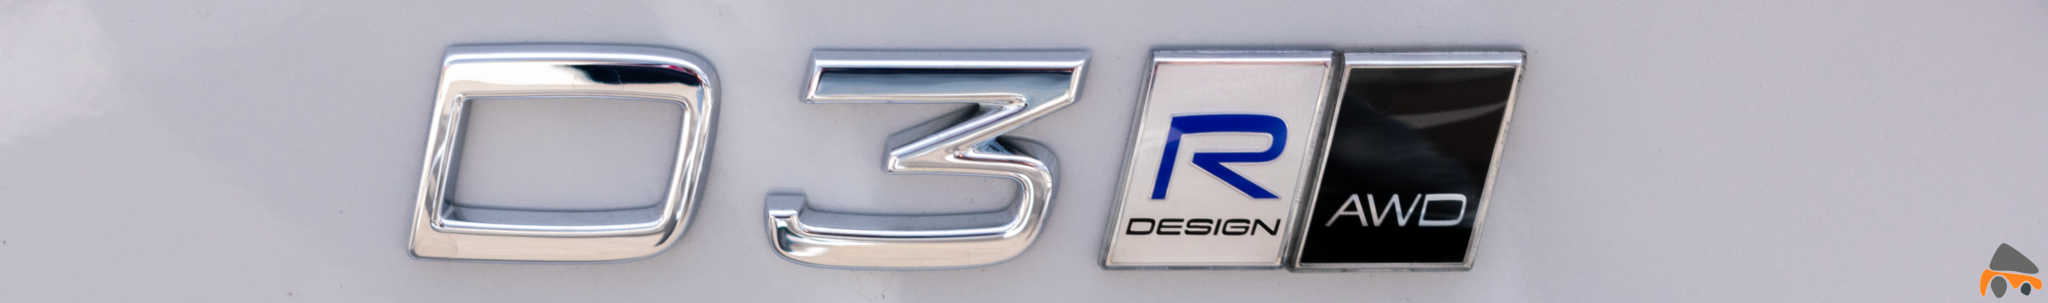 Logos D3 y R Design Ancho Volvo XC40 - Volvo XC40 D3: Un coche que no olvidaré